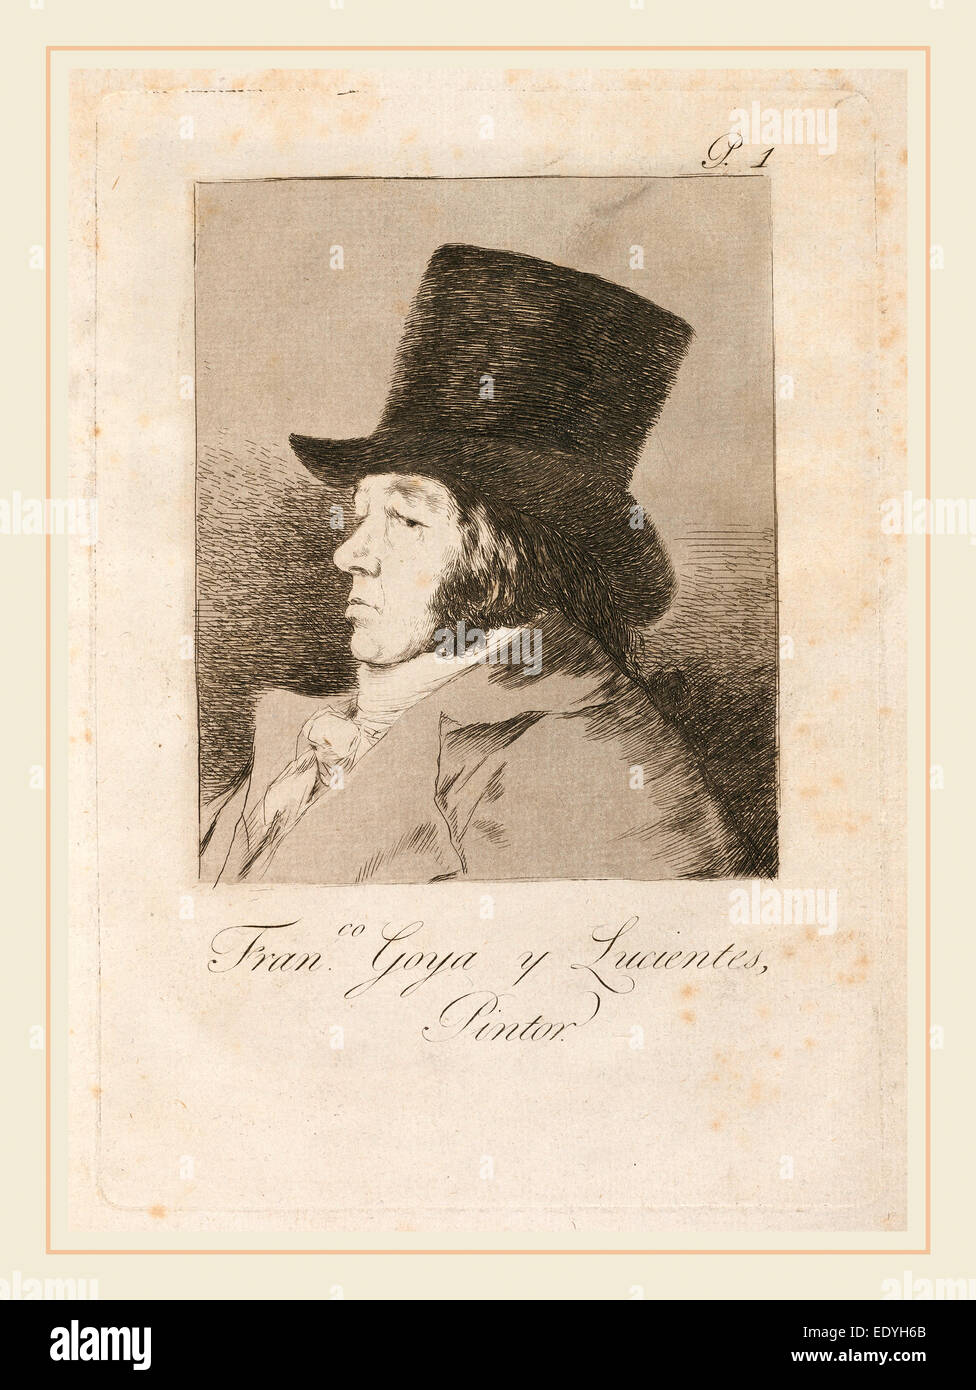 Francisco de Goya, Francisco de Goya y Lucientes, pintor, Español, 1746-1828, publicado el 1799, Aguafuerte, Aguatinta, punta seca Foto de stock